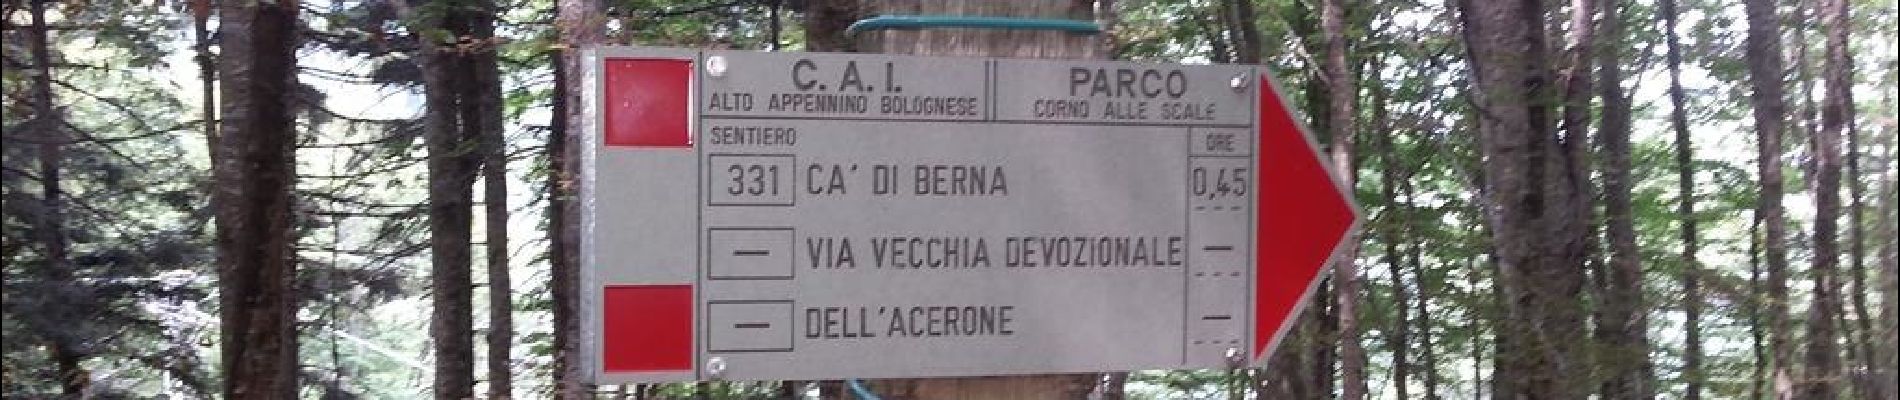 Trail On foot Lizzano in Belvedere - Via dei signori - Photo